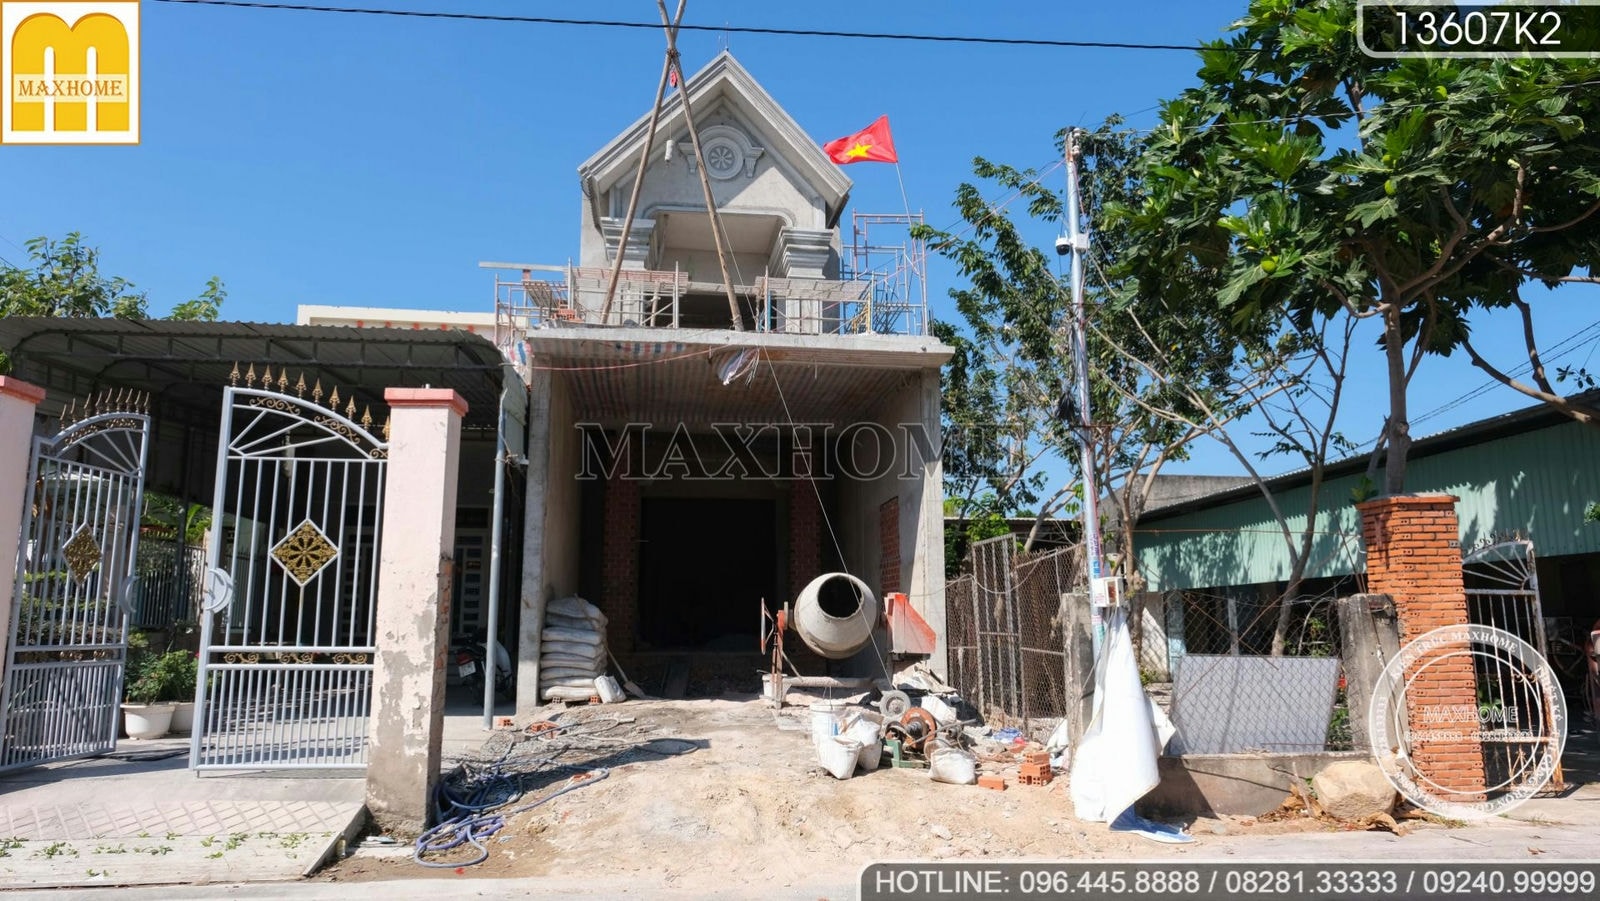 Ghé thăm tiến độ công trình nhà phố mái Thái tại Vũng Tàu I MH02267